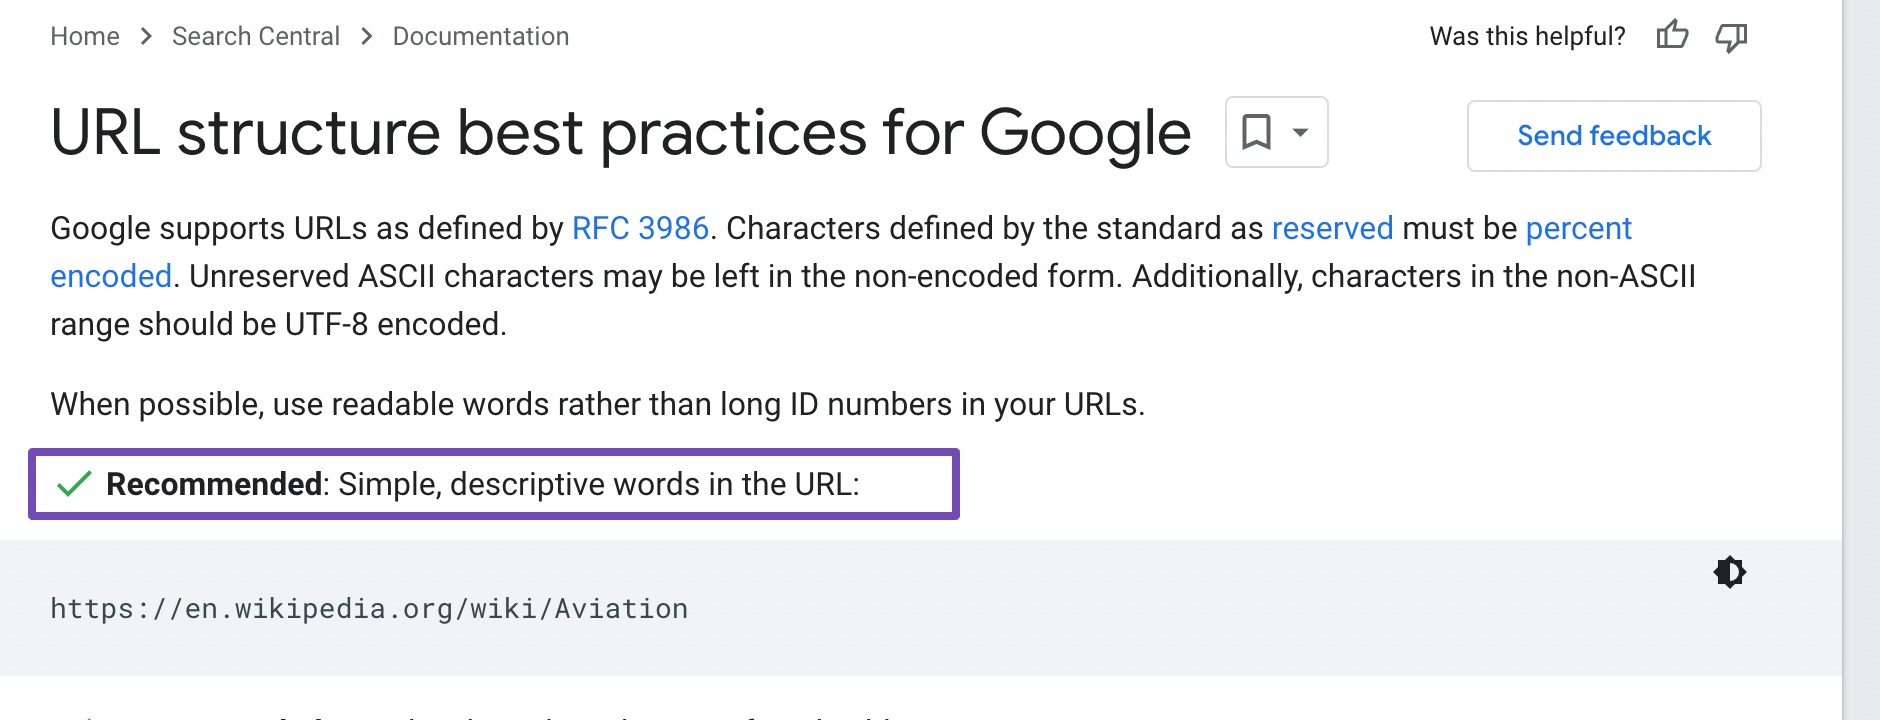 إرشادات بنية URL من Google